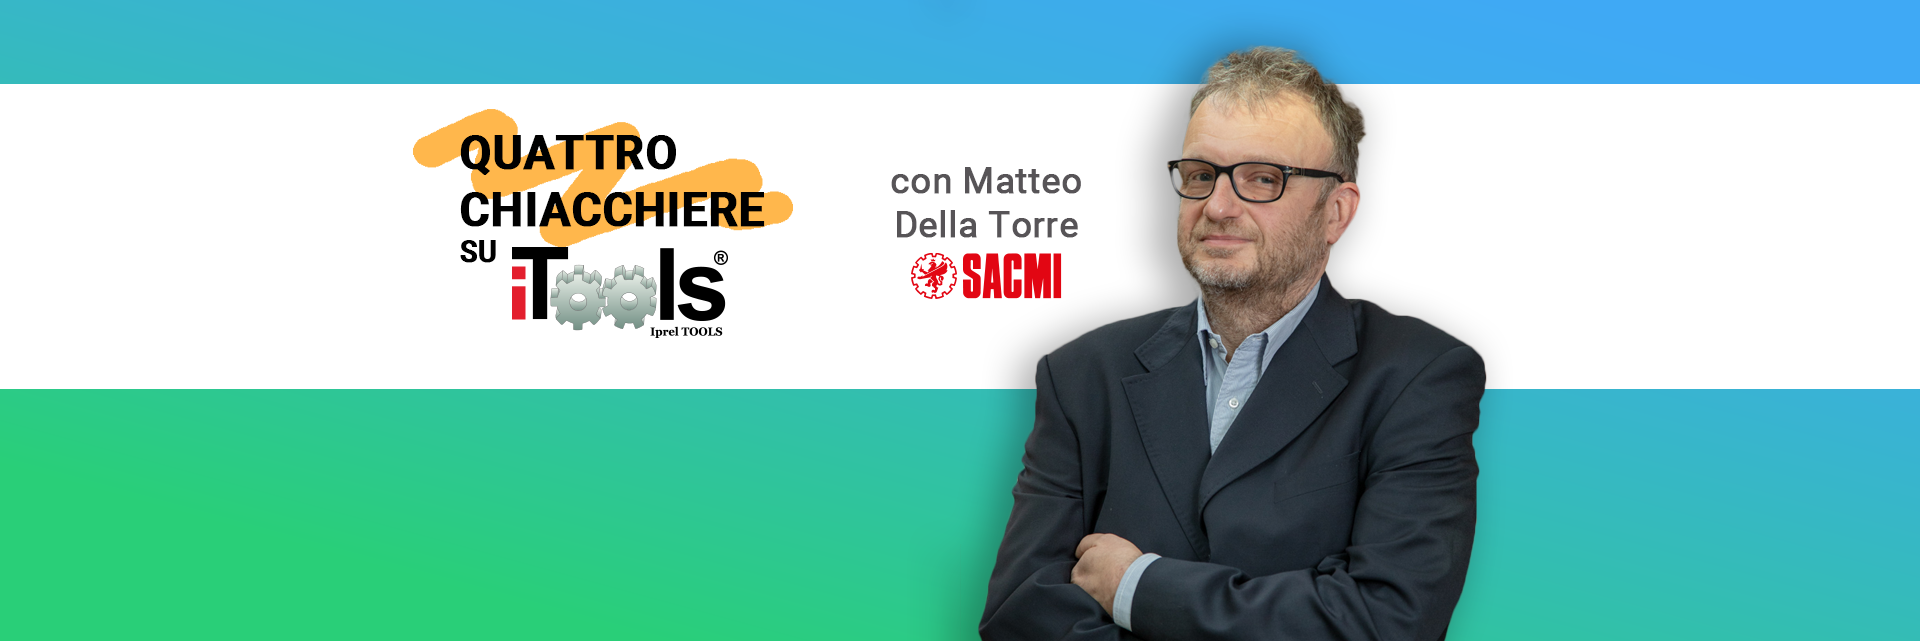 Quattro chiacchiere su iTools con Matteo Della Torre